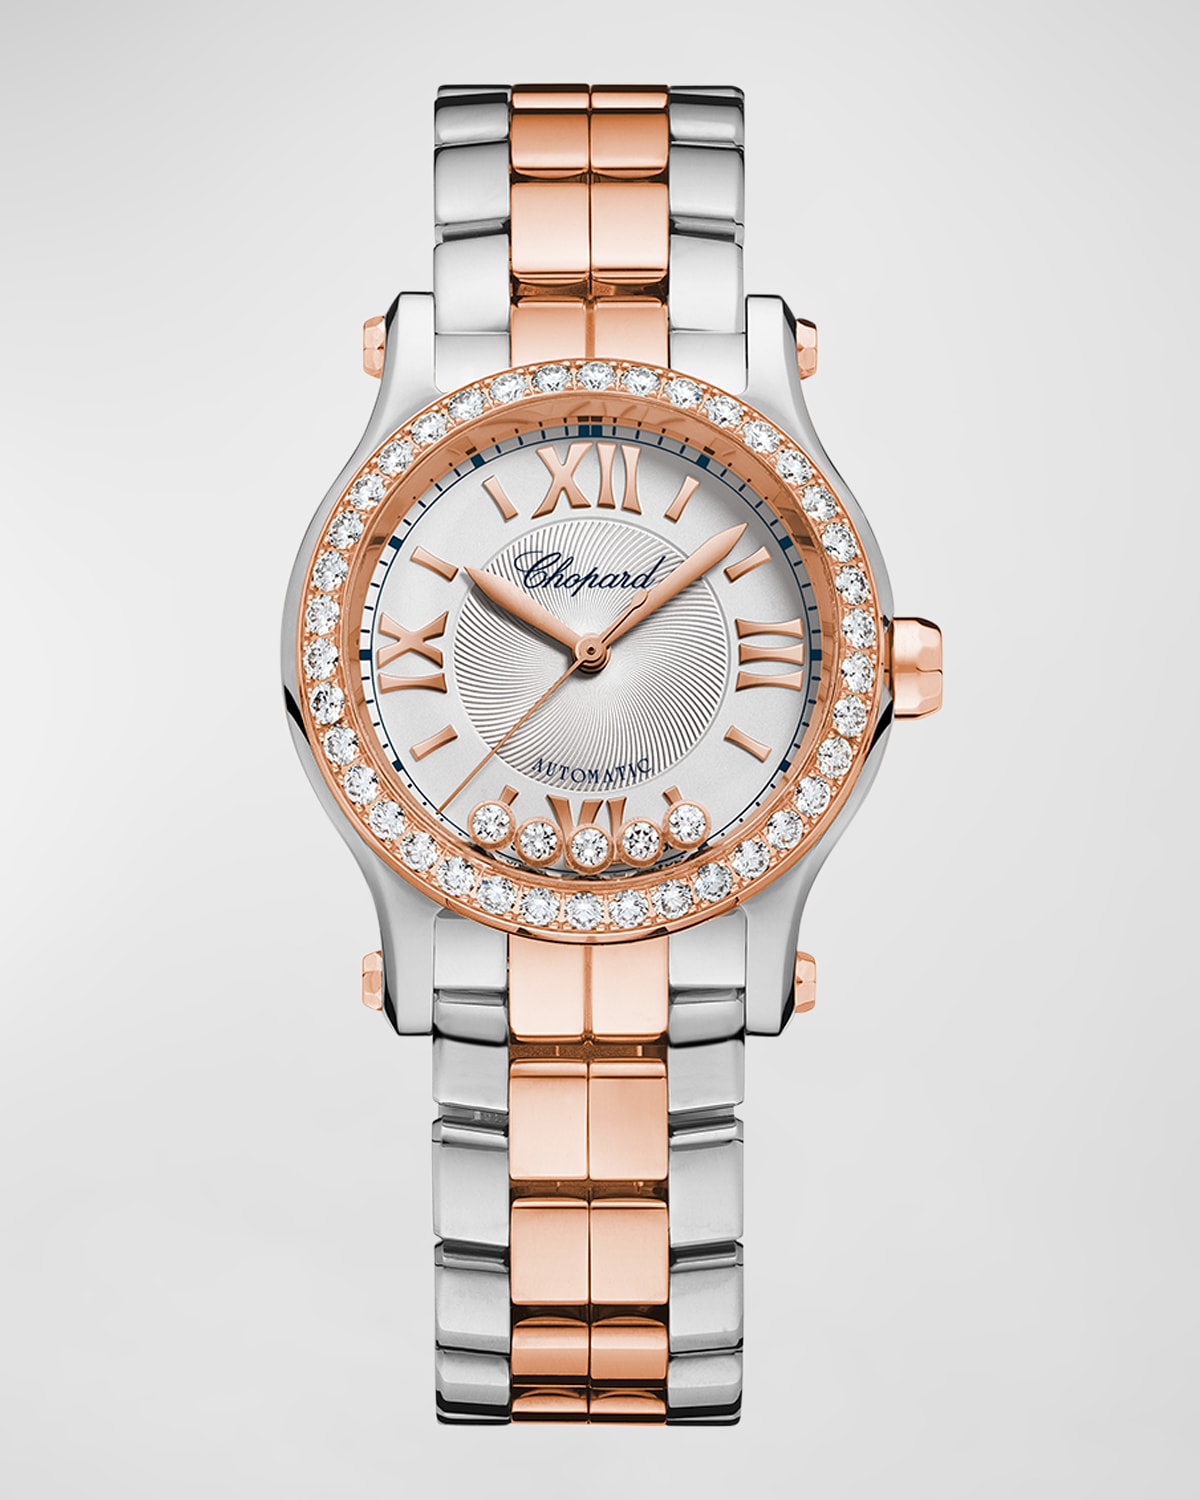 30mm Happy Sport Diamond Bezel Watch with Bracelet Strap, Rose Gold/Steel